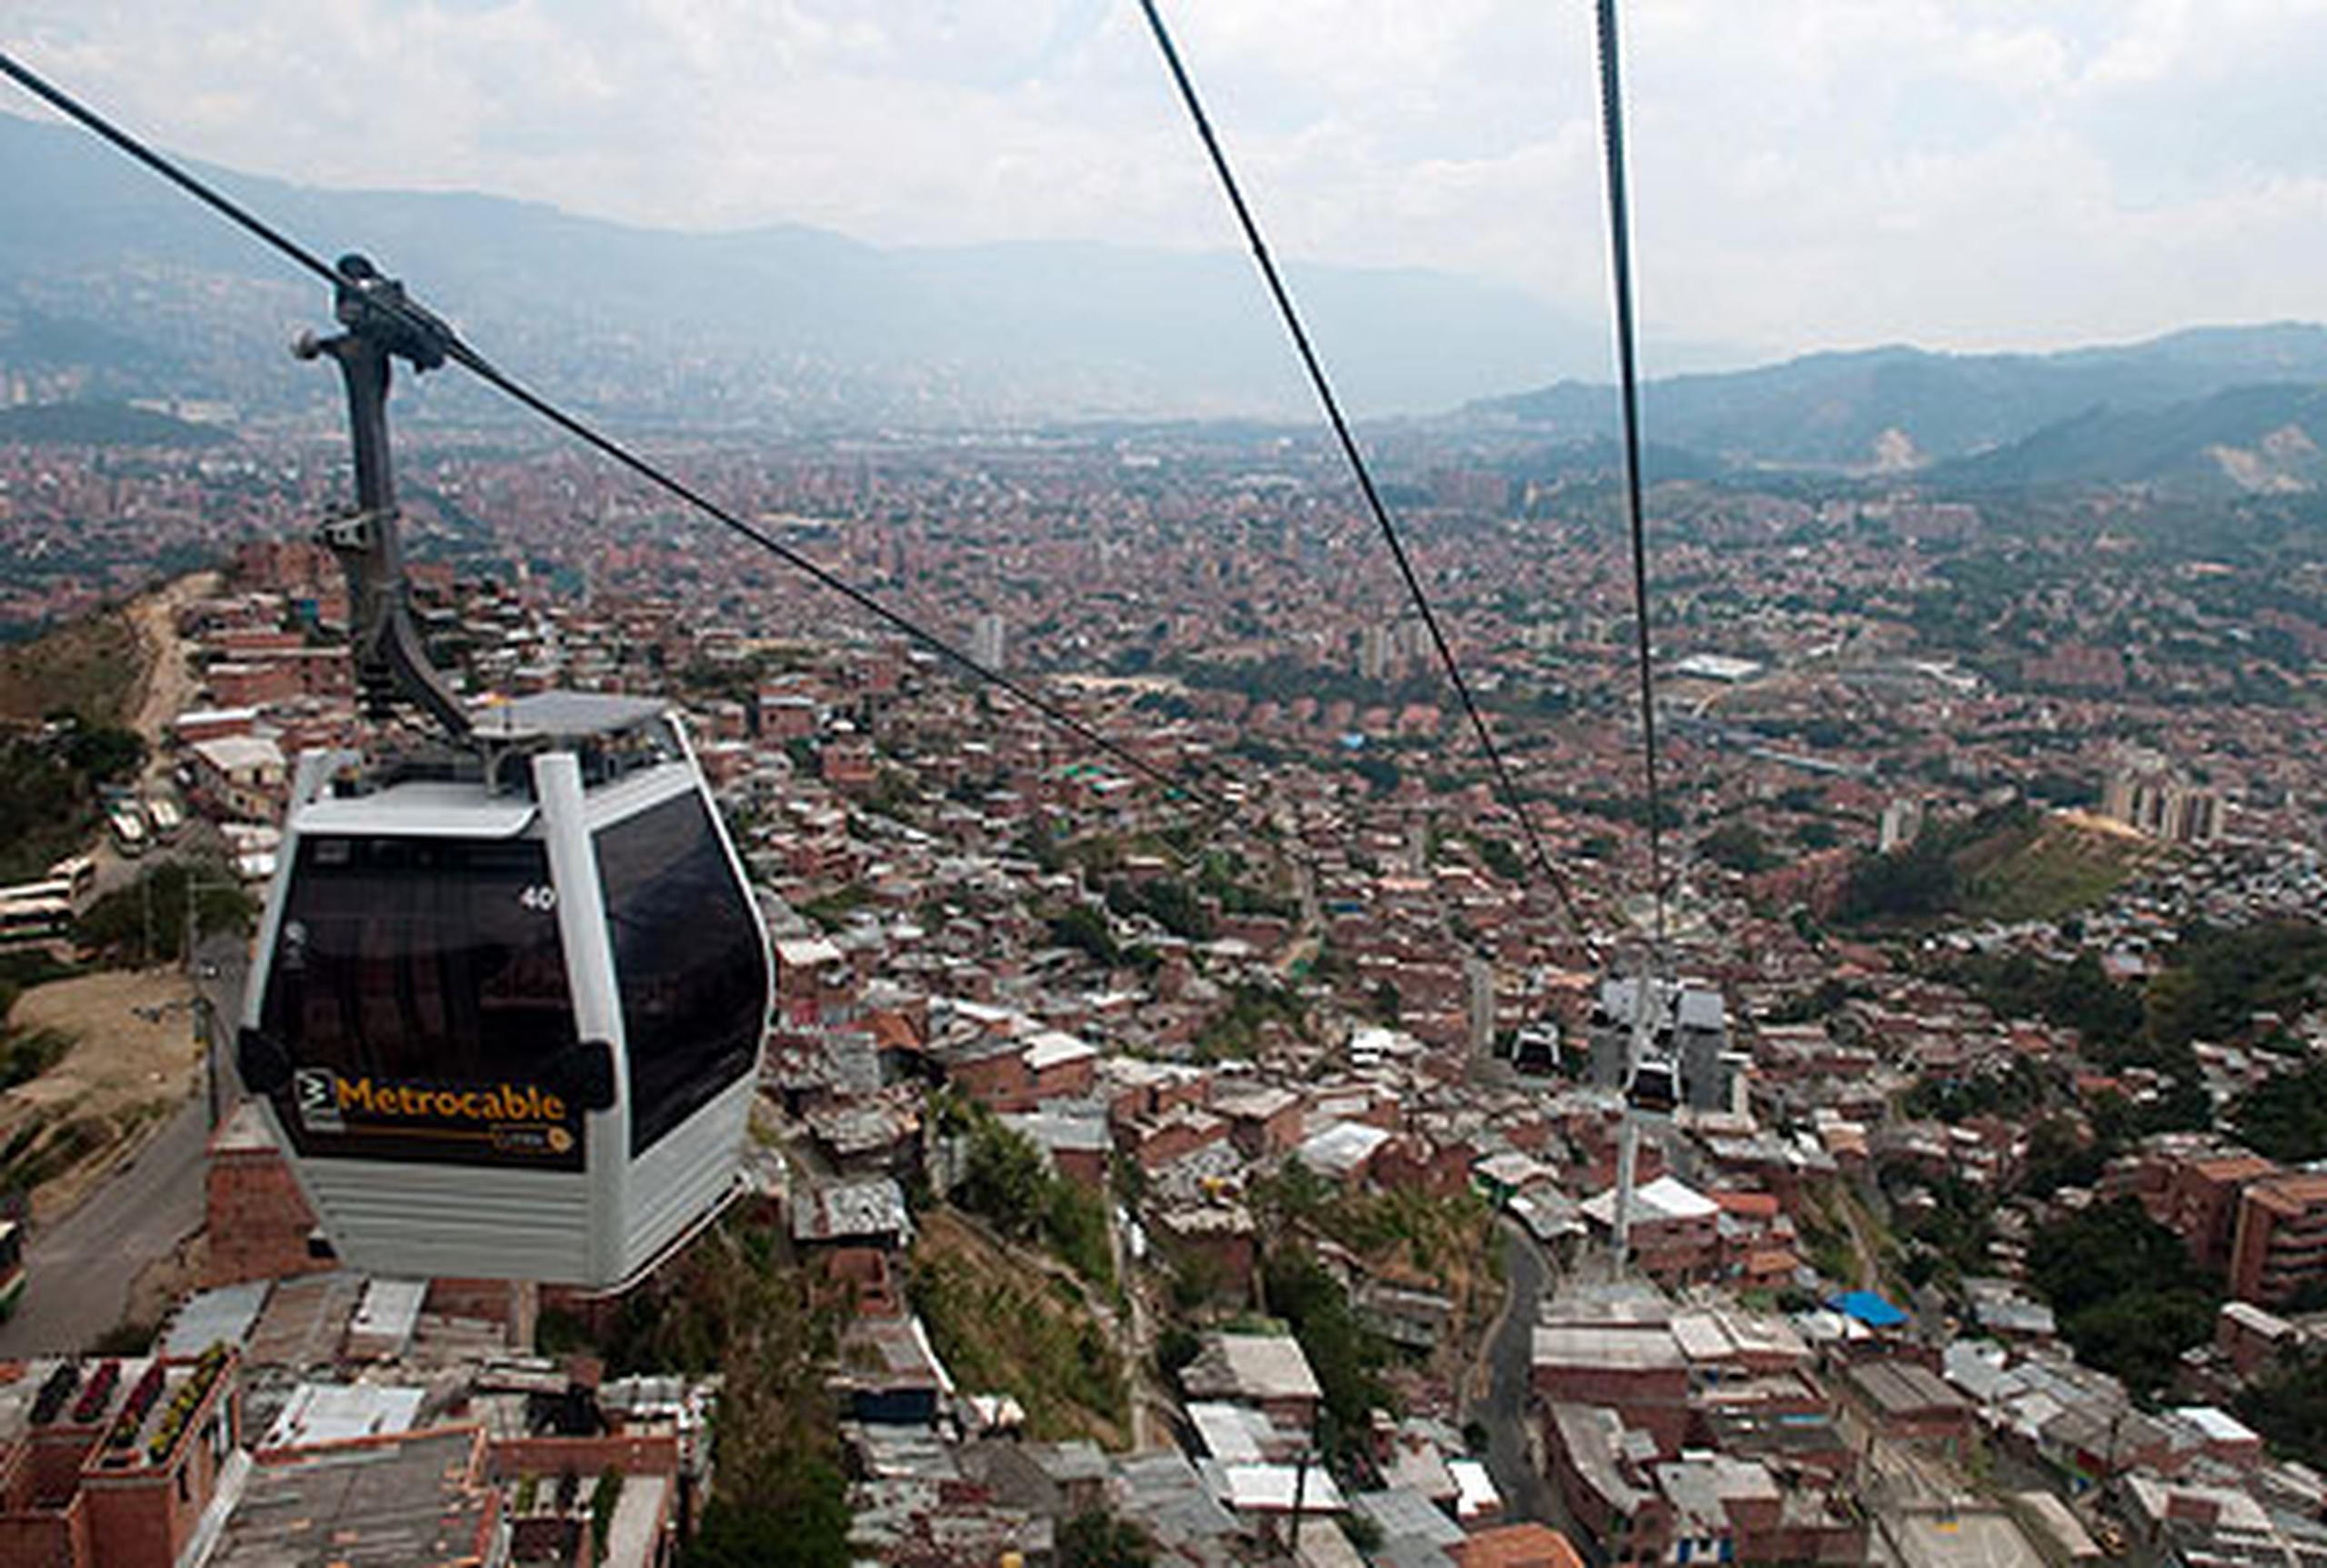 En los años ochenta y noventa del siglo pasado, Medellín estaba considerada la ciudad más violenta del mundo, un lugar donde se llegaron a registrar más de 7,000 homicidios al año.
